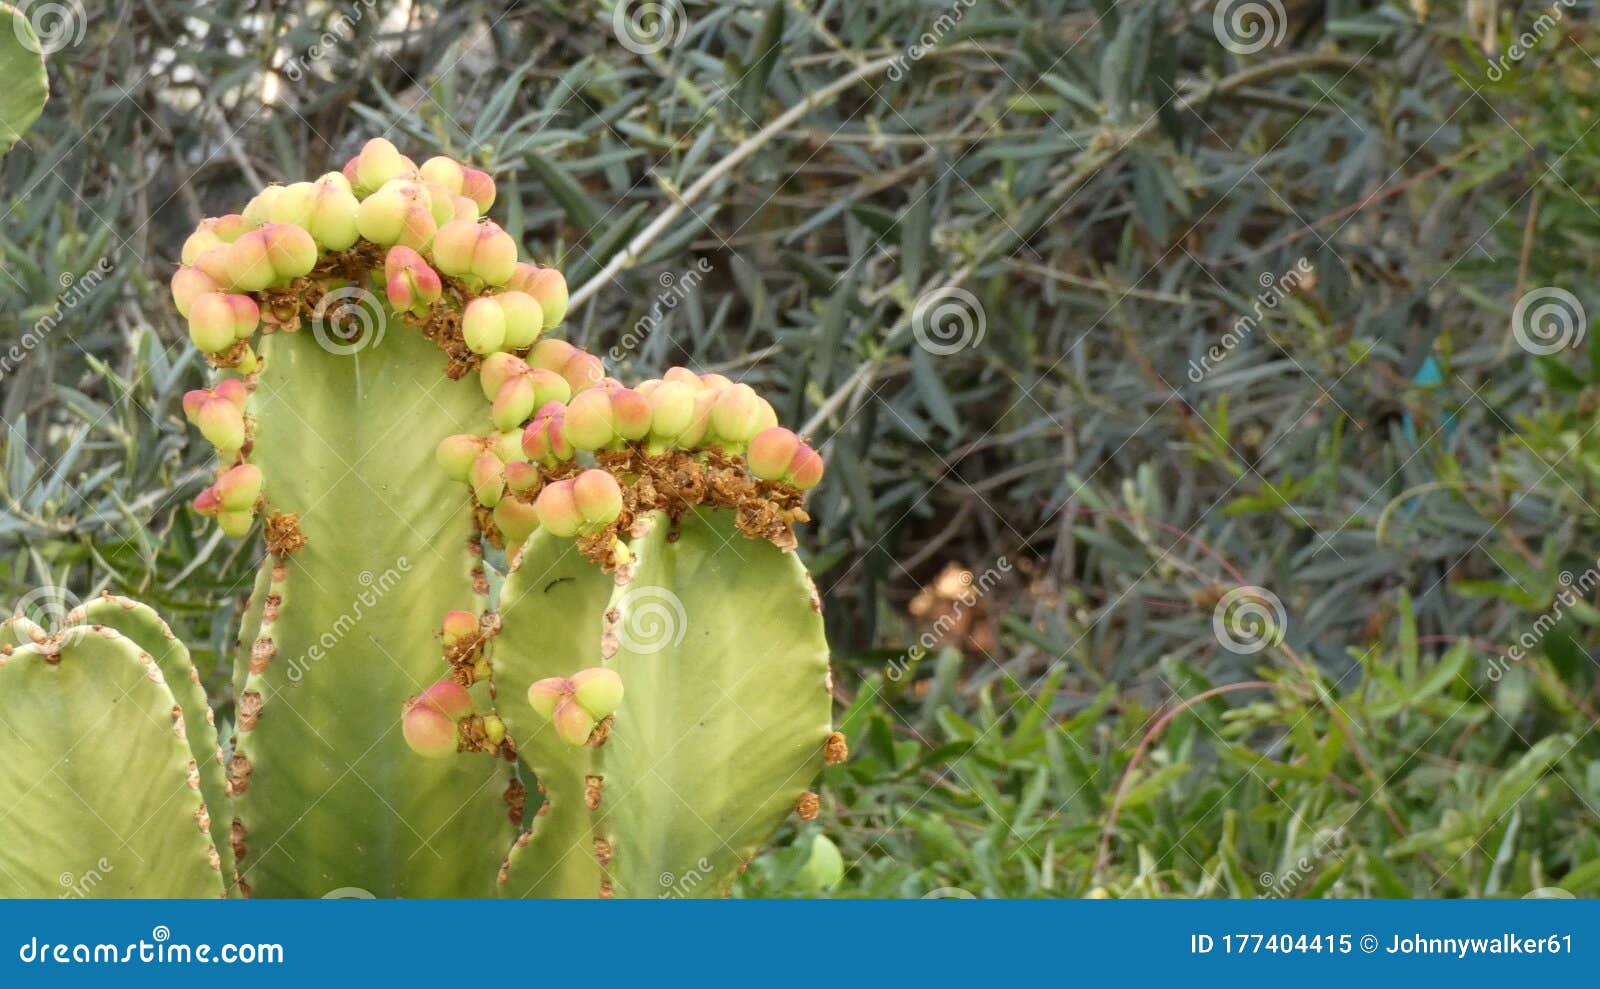 Cierre De Cactus De árboles Candelabros Con Brotes De Flores Amarillas  Imagen de archivo - Imagen de flora, flores: 177404415